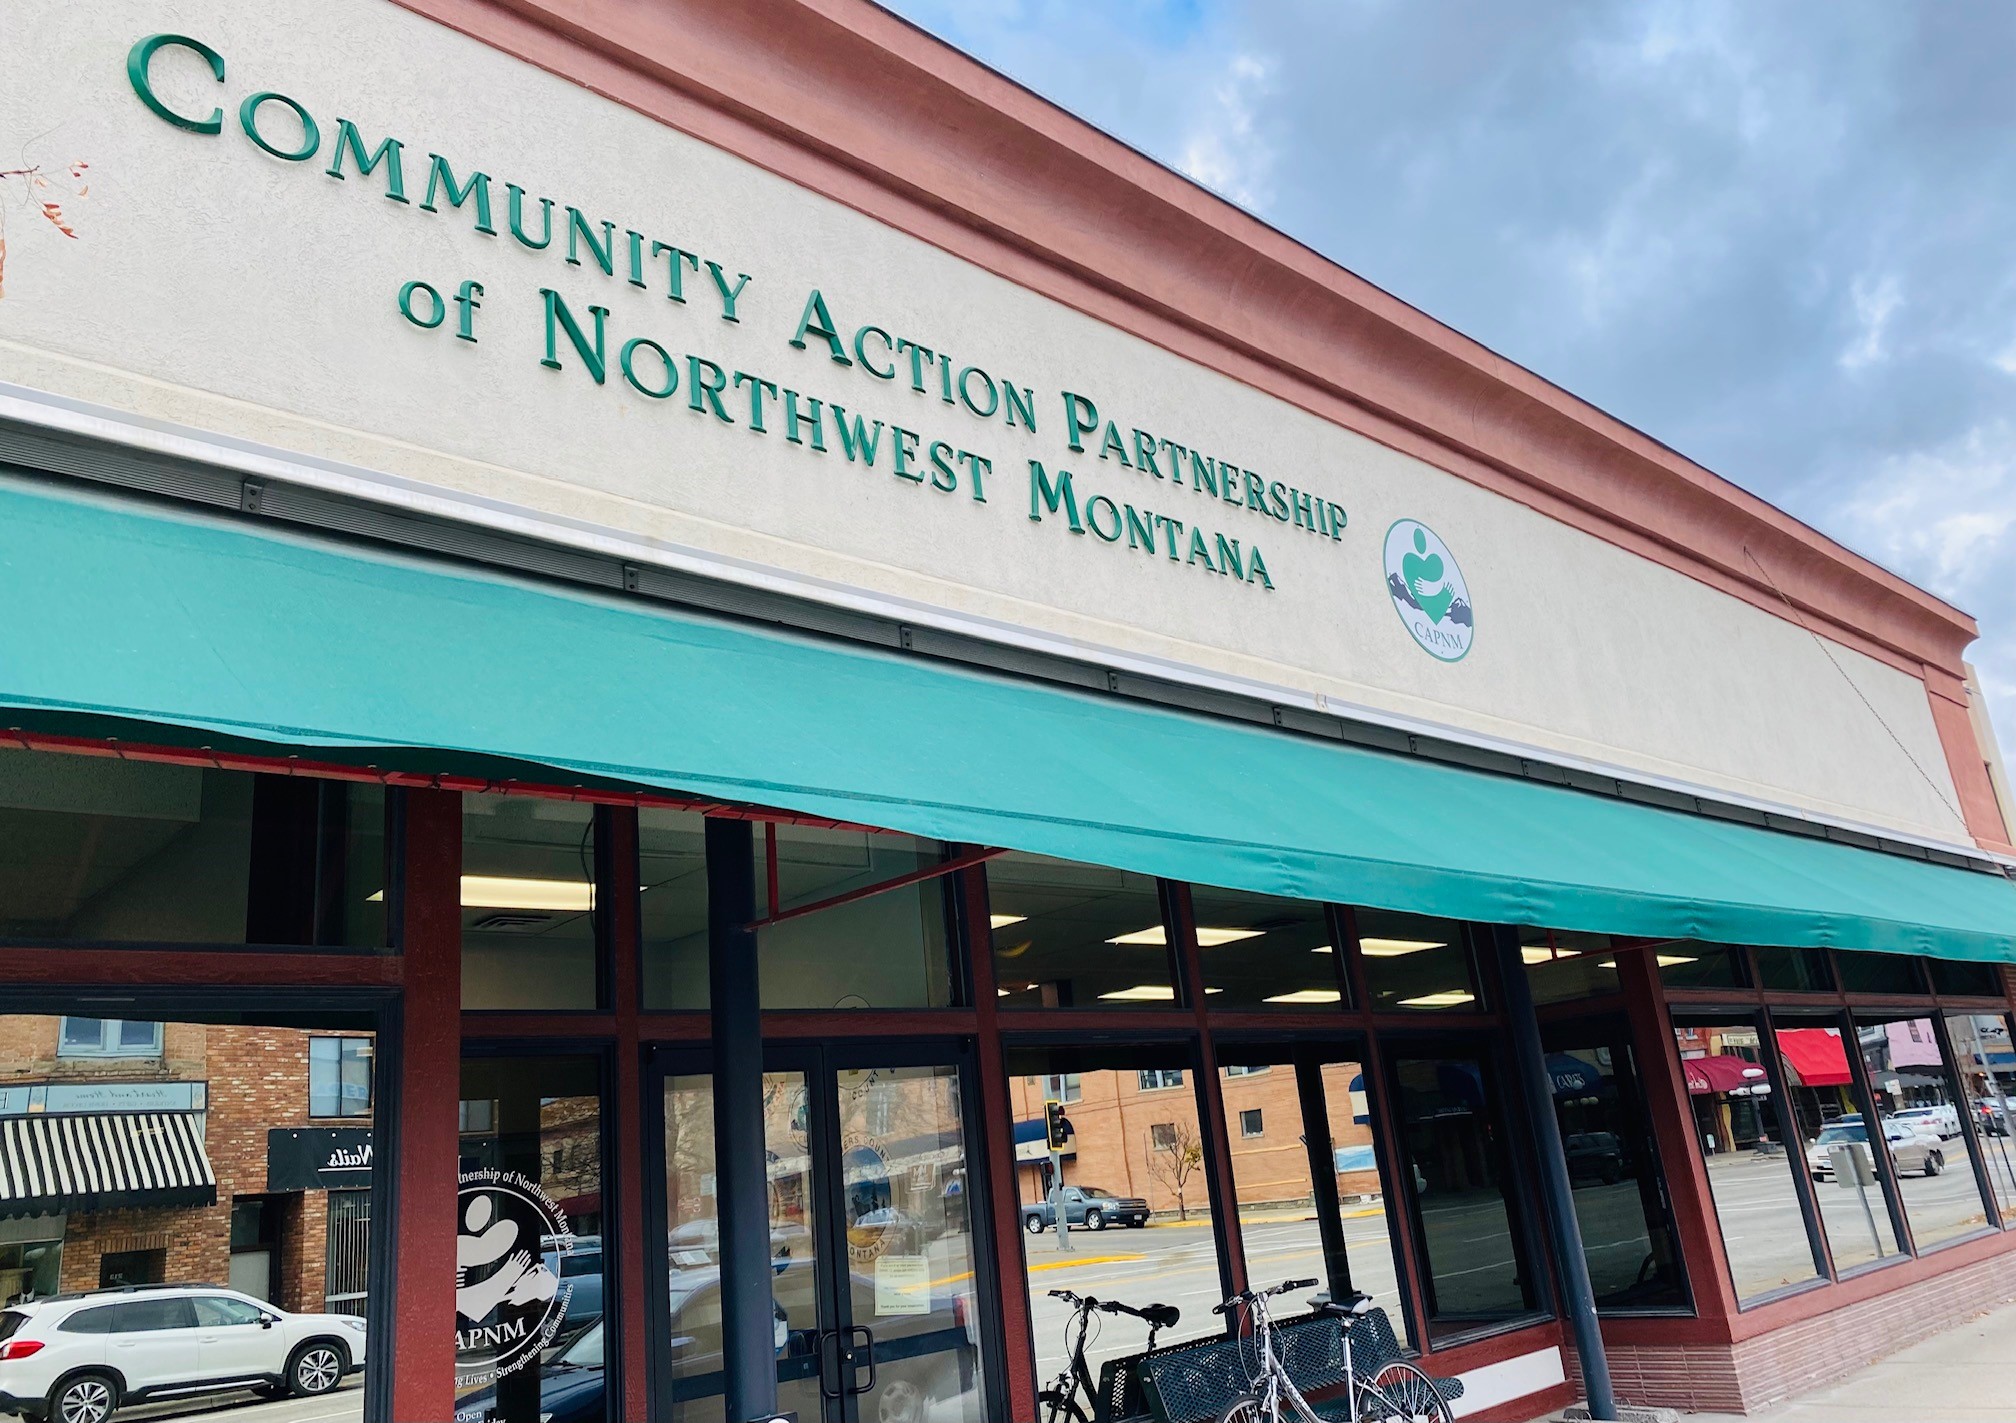 Community Action Partnership of Northwest Montana